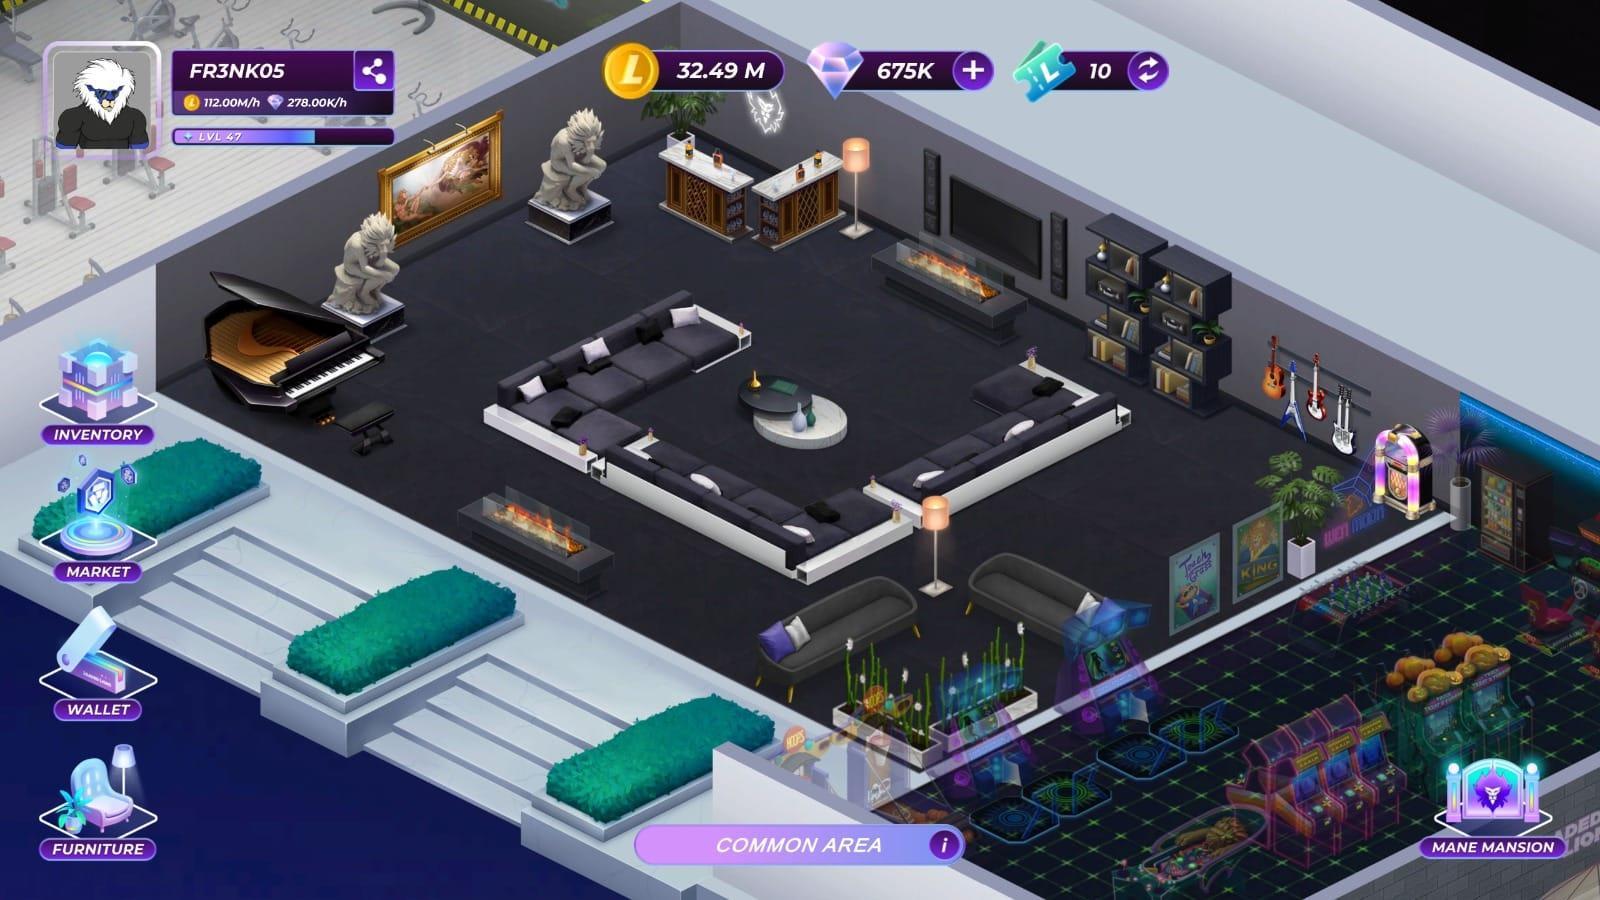 लोडेड लायंस: माने सिटी एक टाइकून वेब3 गेम है जहां खिलाड़ी अपने सपनों के शहरों और हवेली को सोने और हीरे से डिजाइन और निर्माण करते हैं।